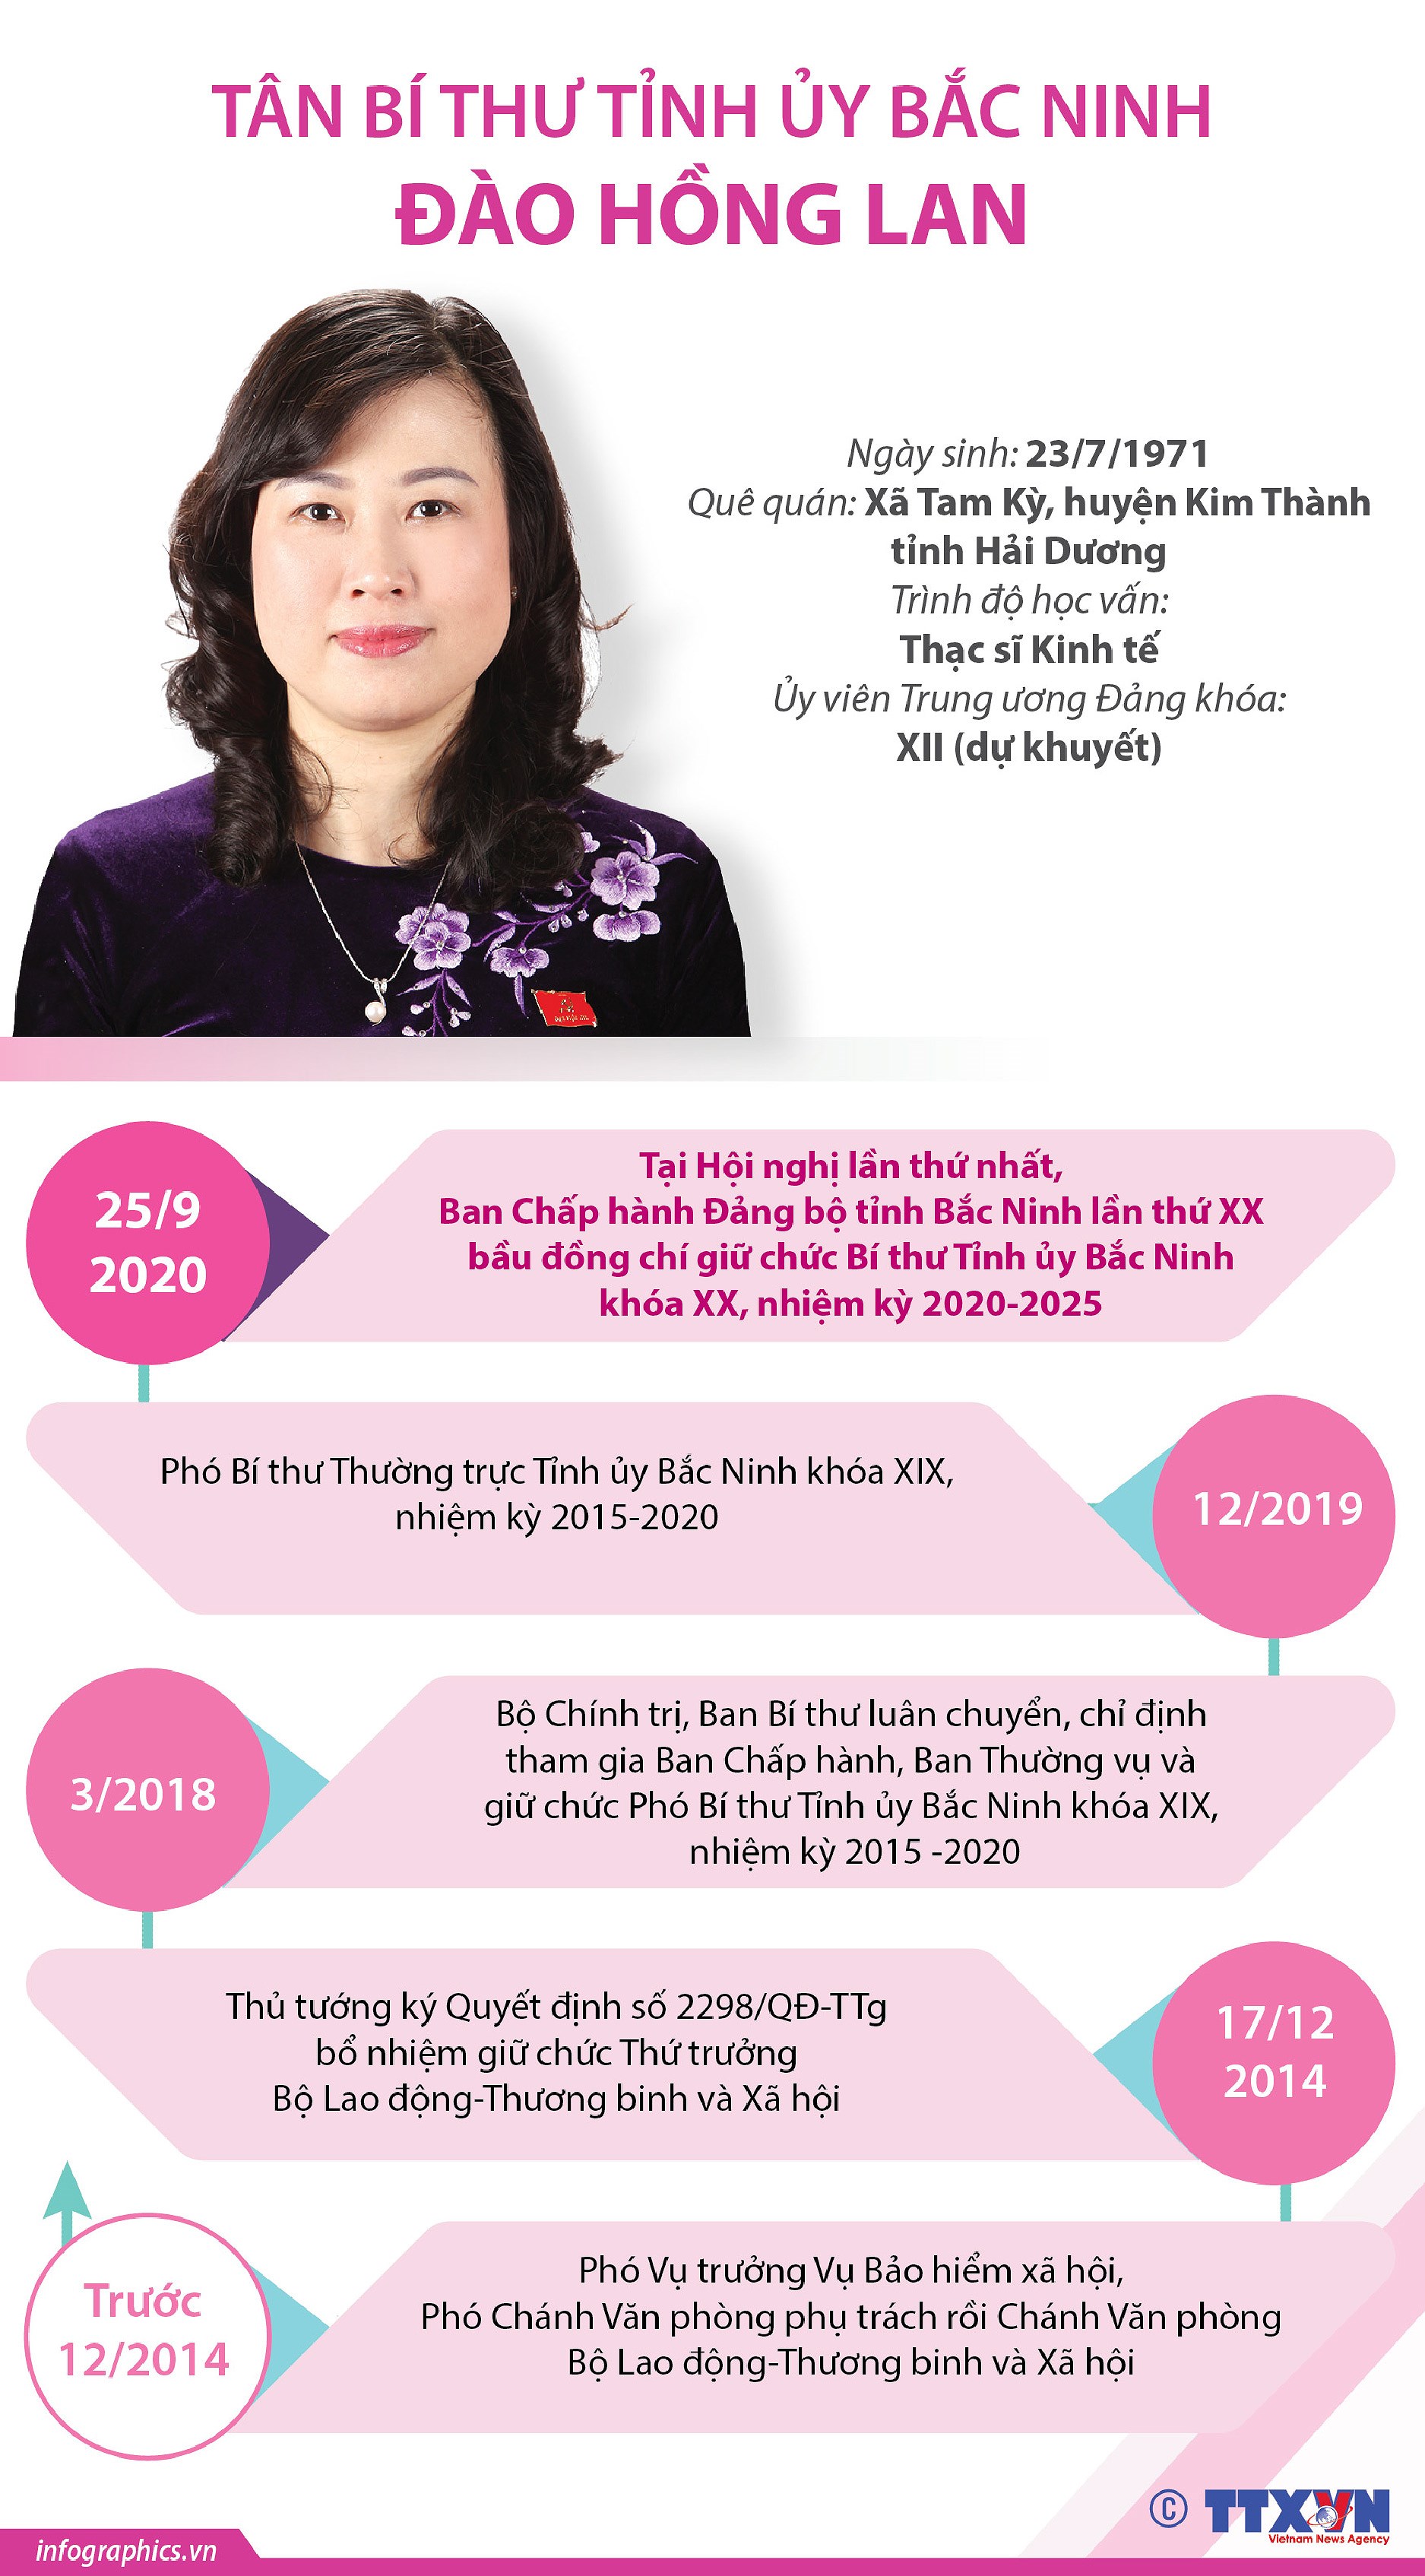 [Infographics] Thong tin ve tan Bi thu Tinh uy Bac Ninh Dao Hong Lan hinh anh 1